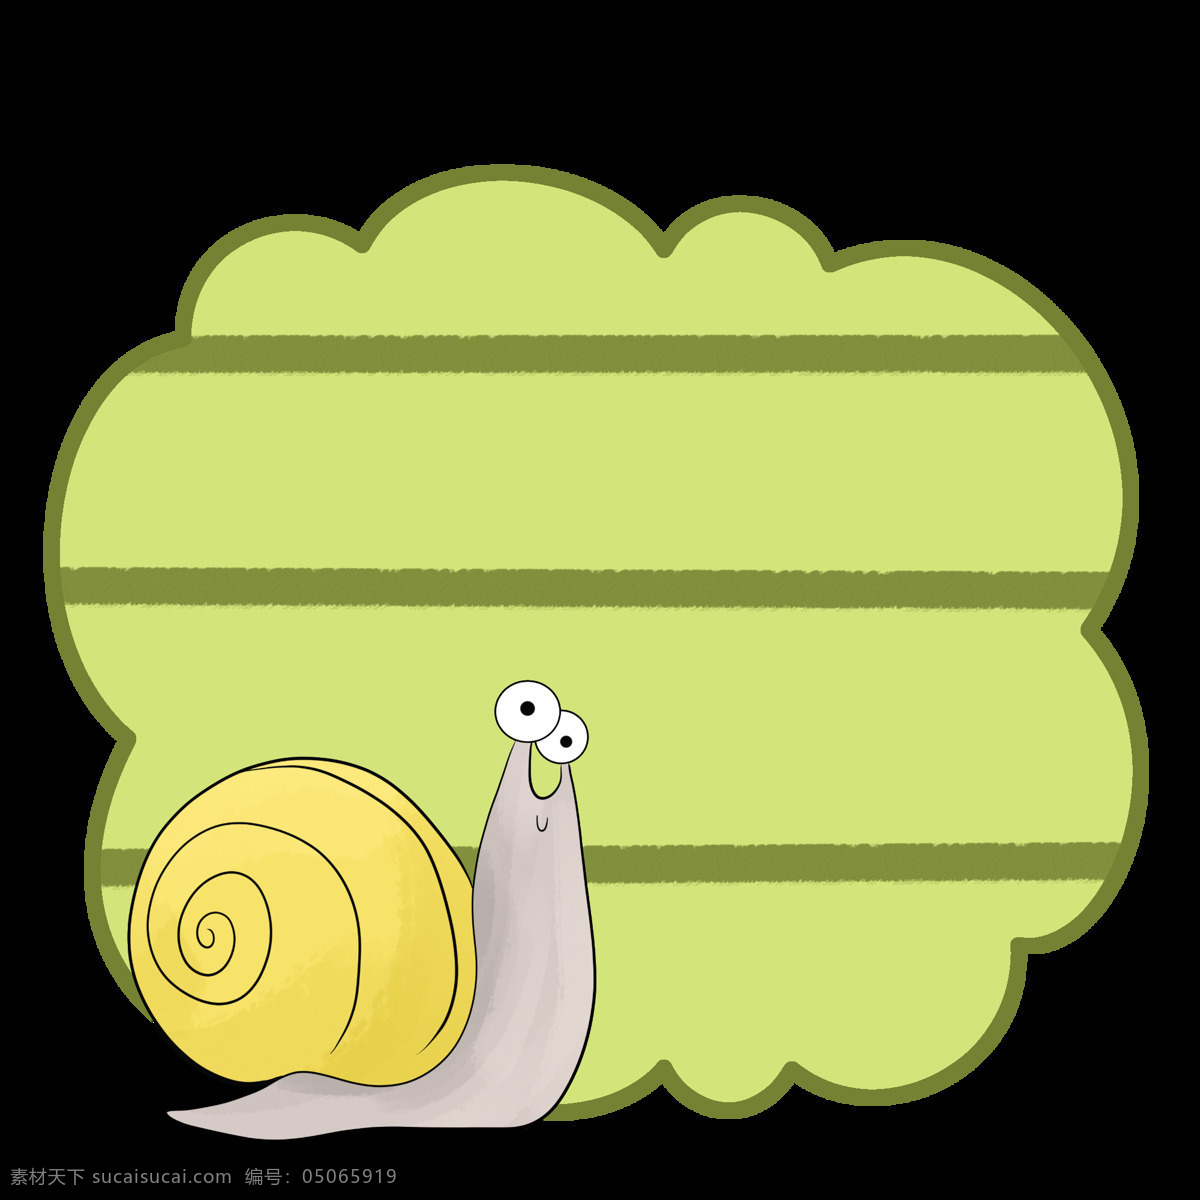 绿色 蜗牛 边框 插画 手绘蜗牛边框 卡通蜗牛边框 漂亮 唯美蜗牛边框 蜗牛边框装饰